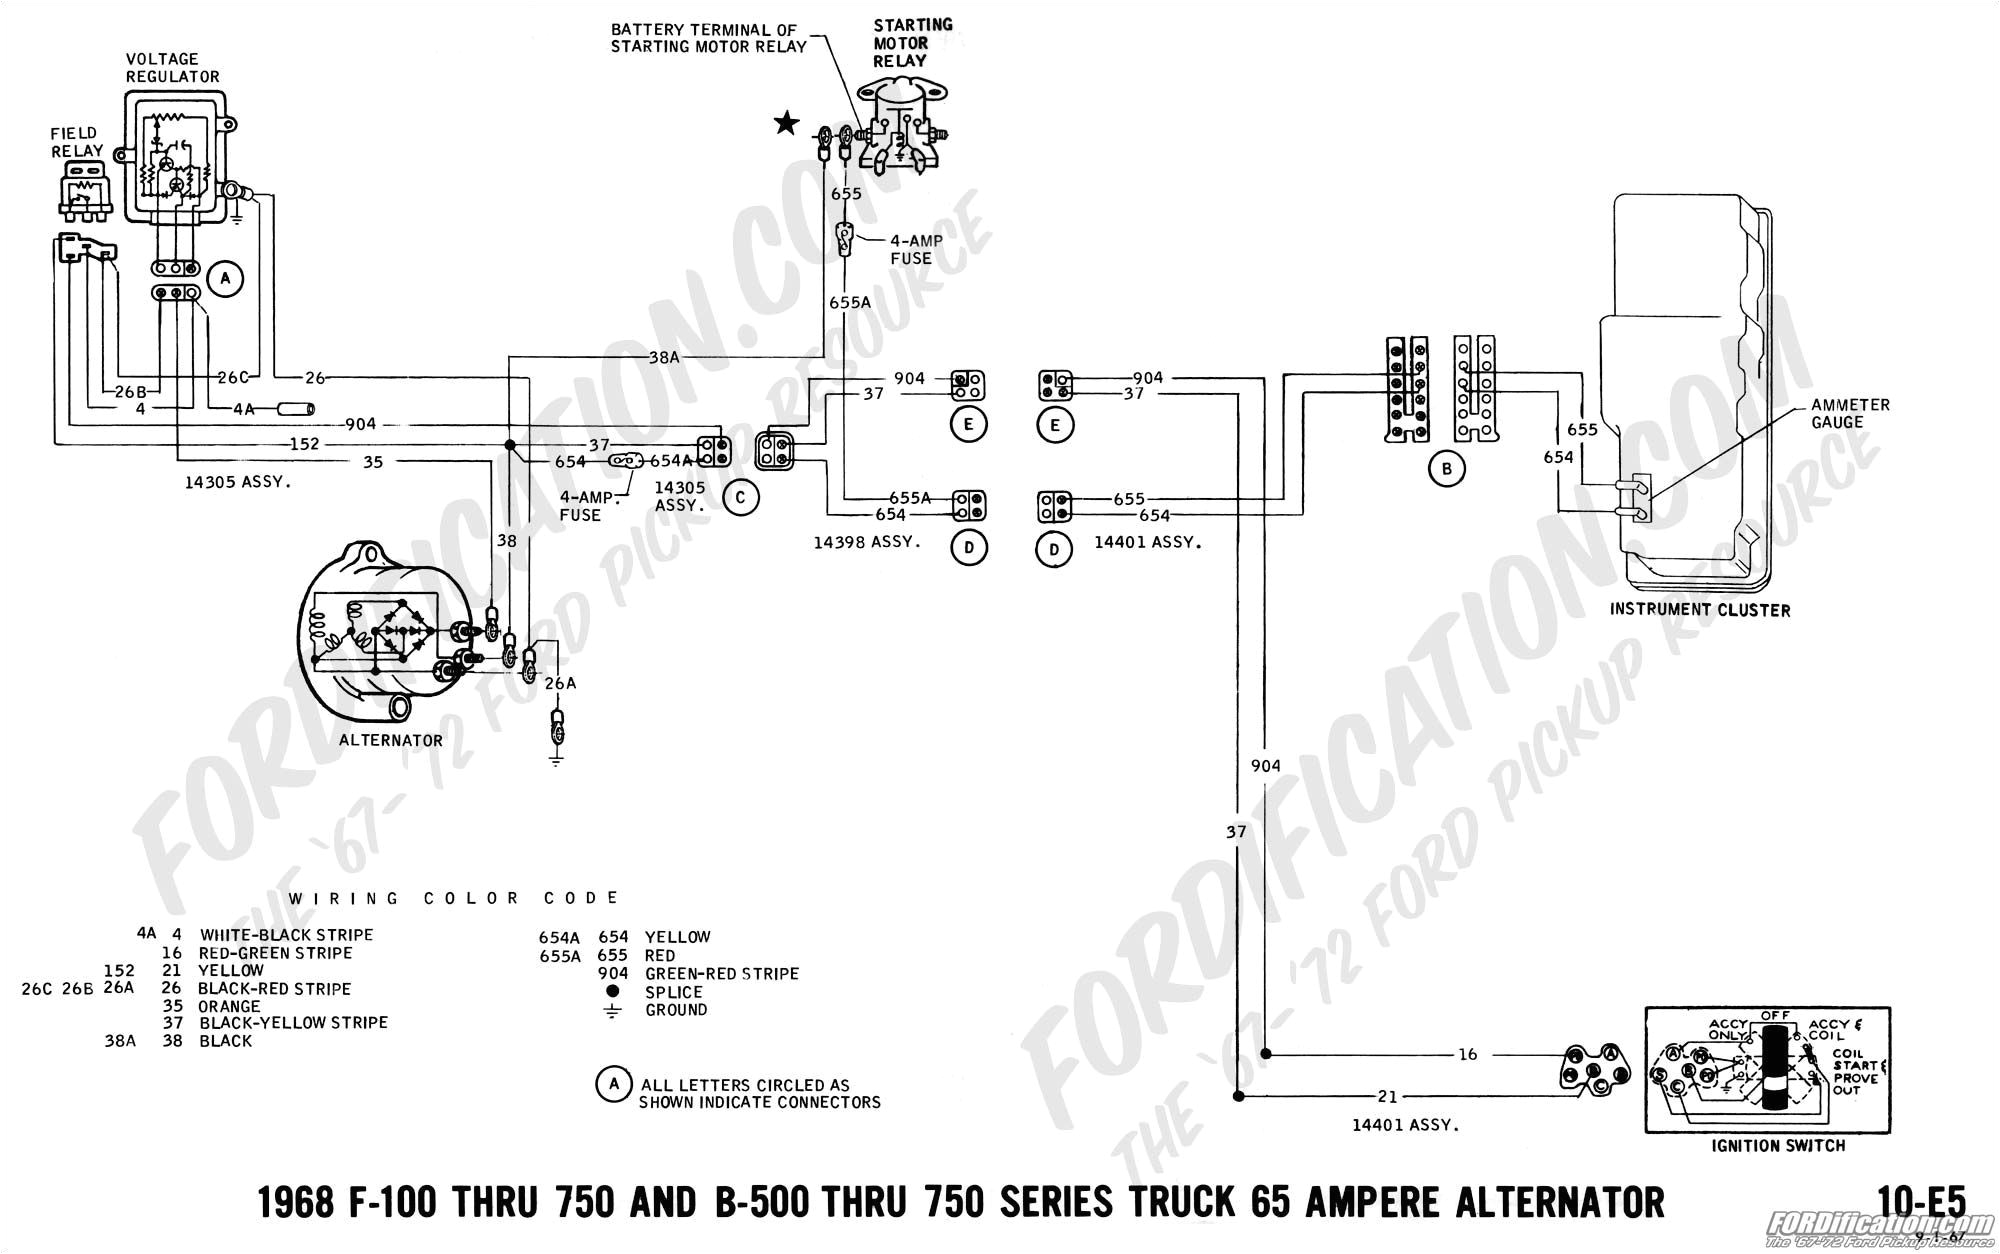 echlin solenoid 36 volt wiring diagram wiring librarywiring diagram alternator voltage regulator fresh wire alternator rectifier